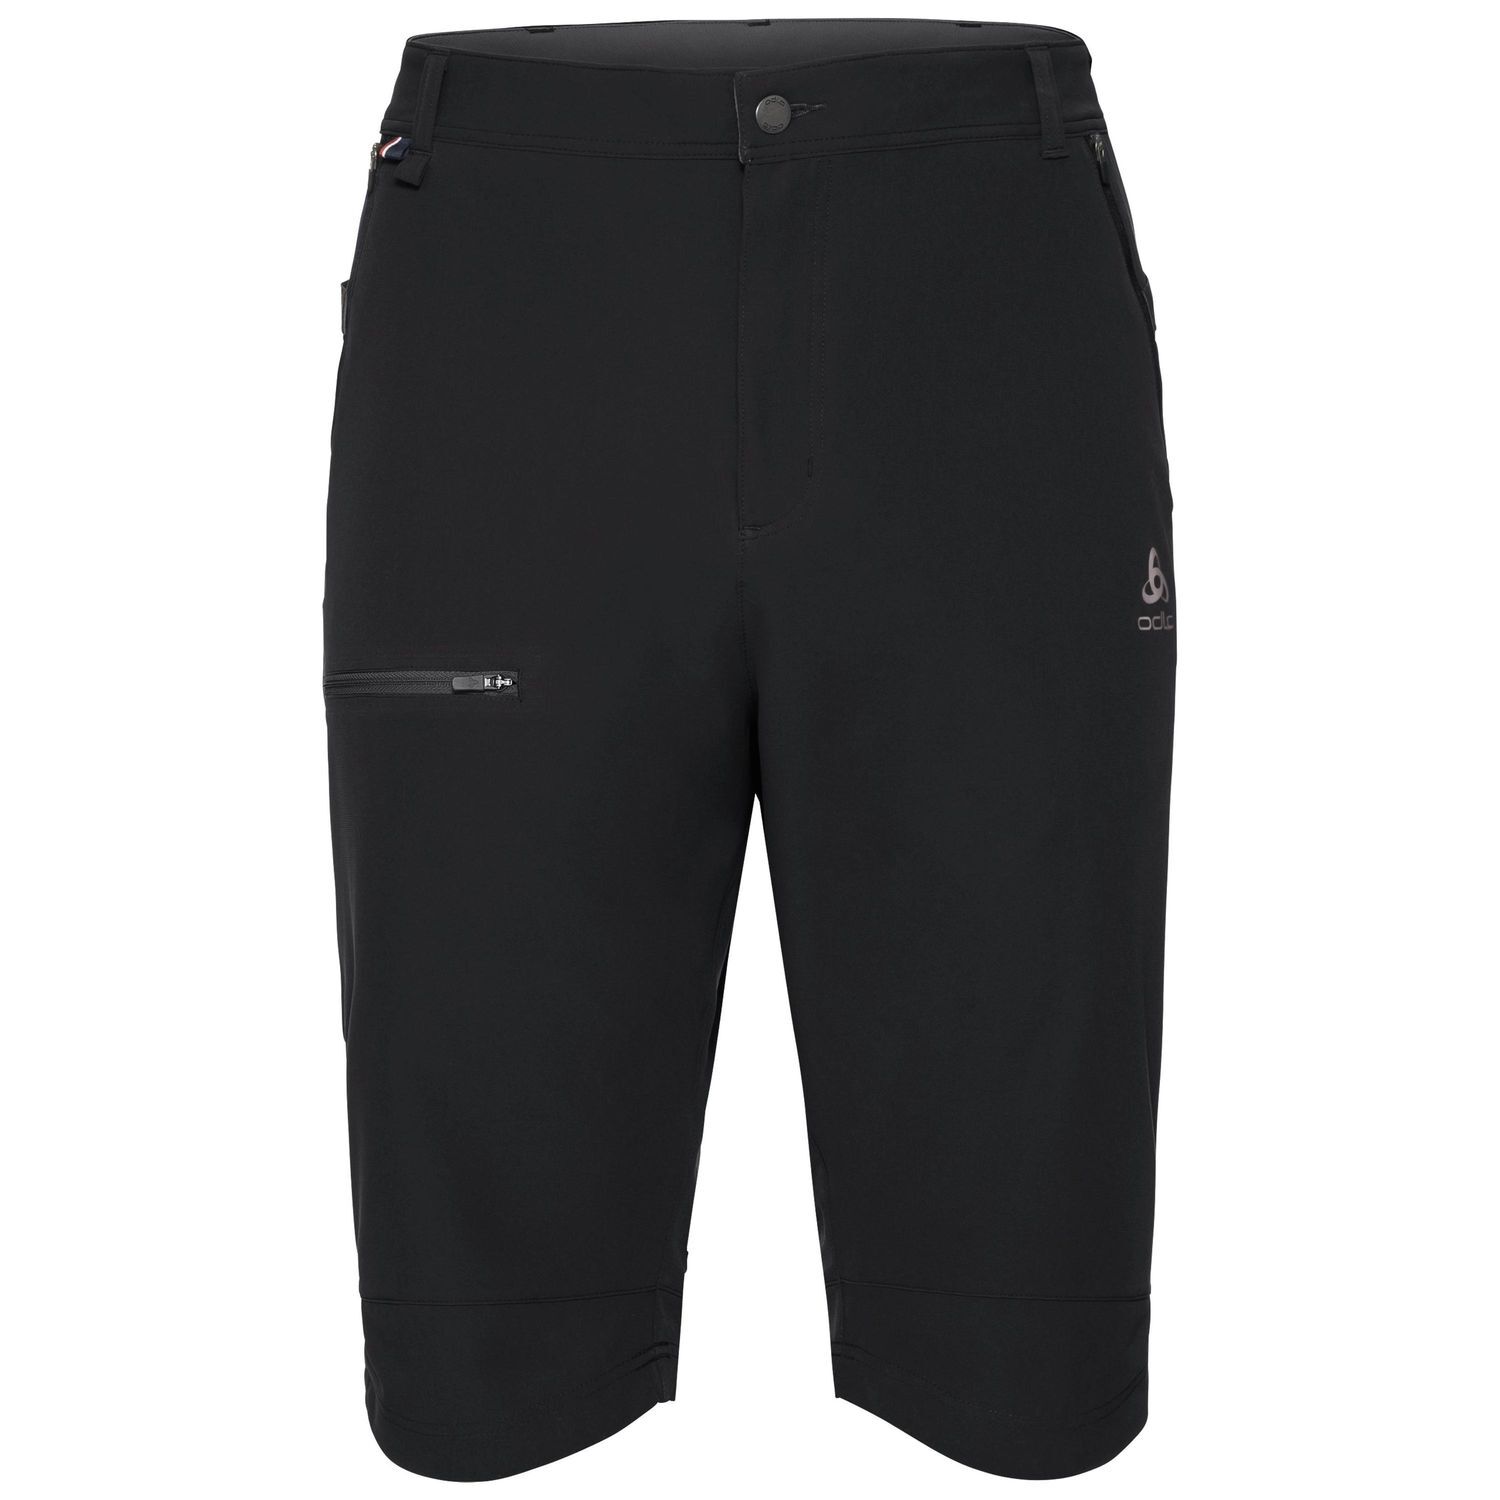 Odlo - Shorts Saikai Cool Pro - Shorts - Men's